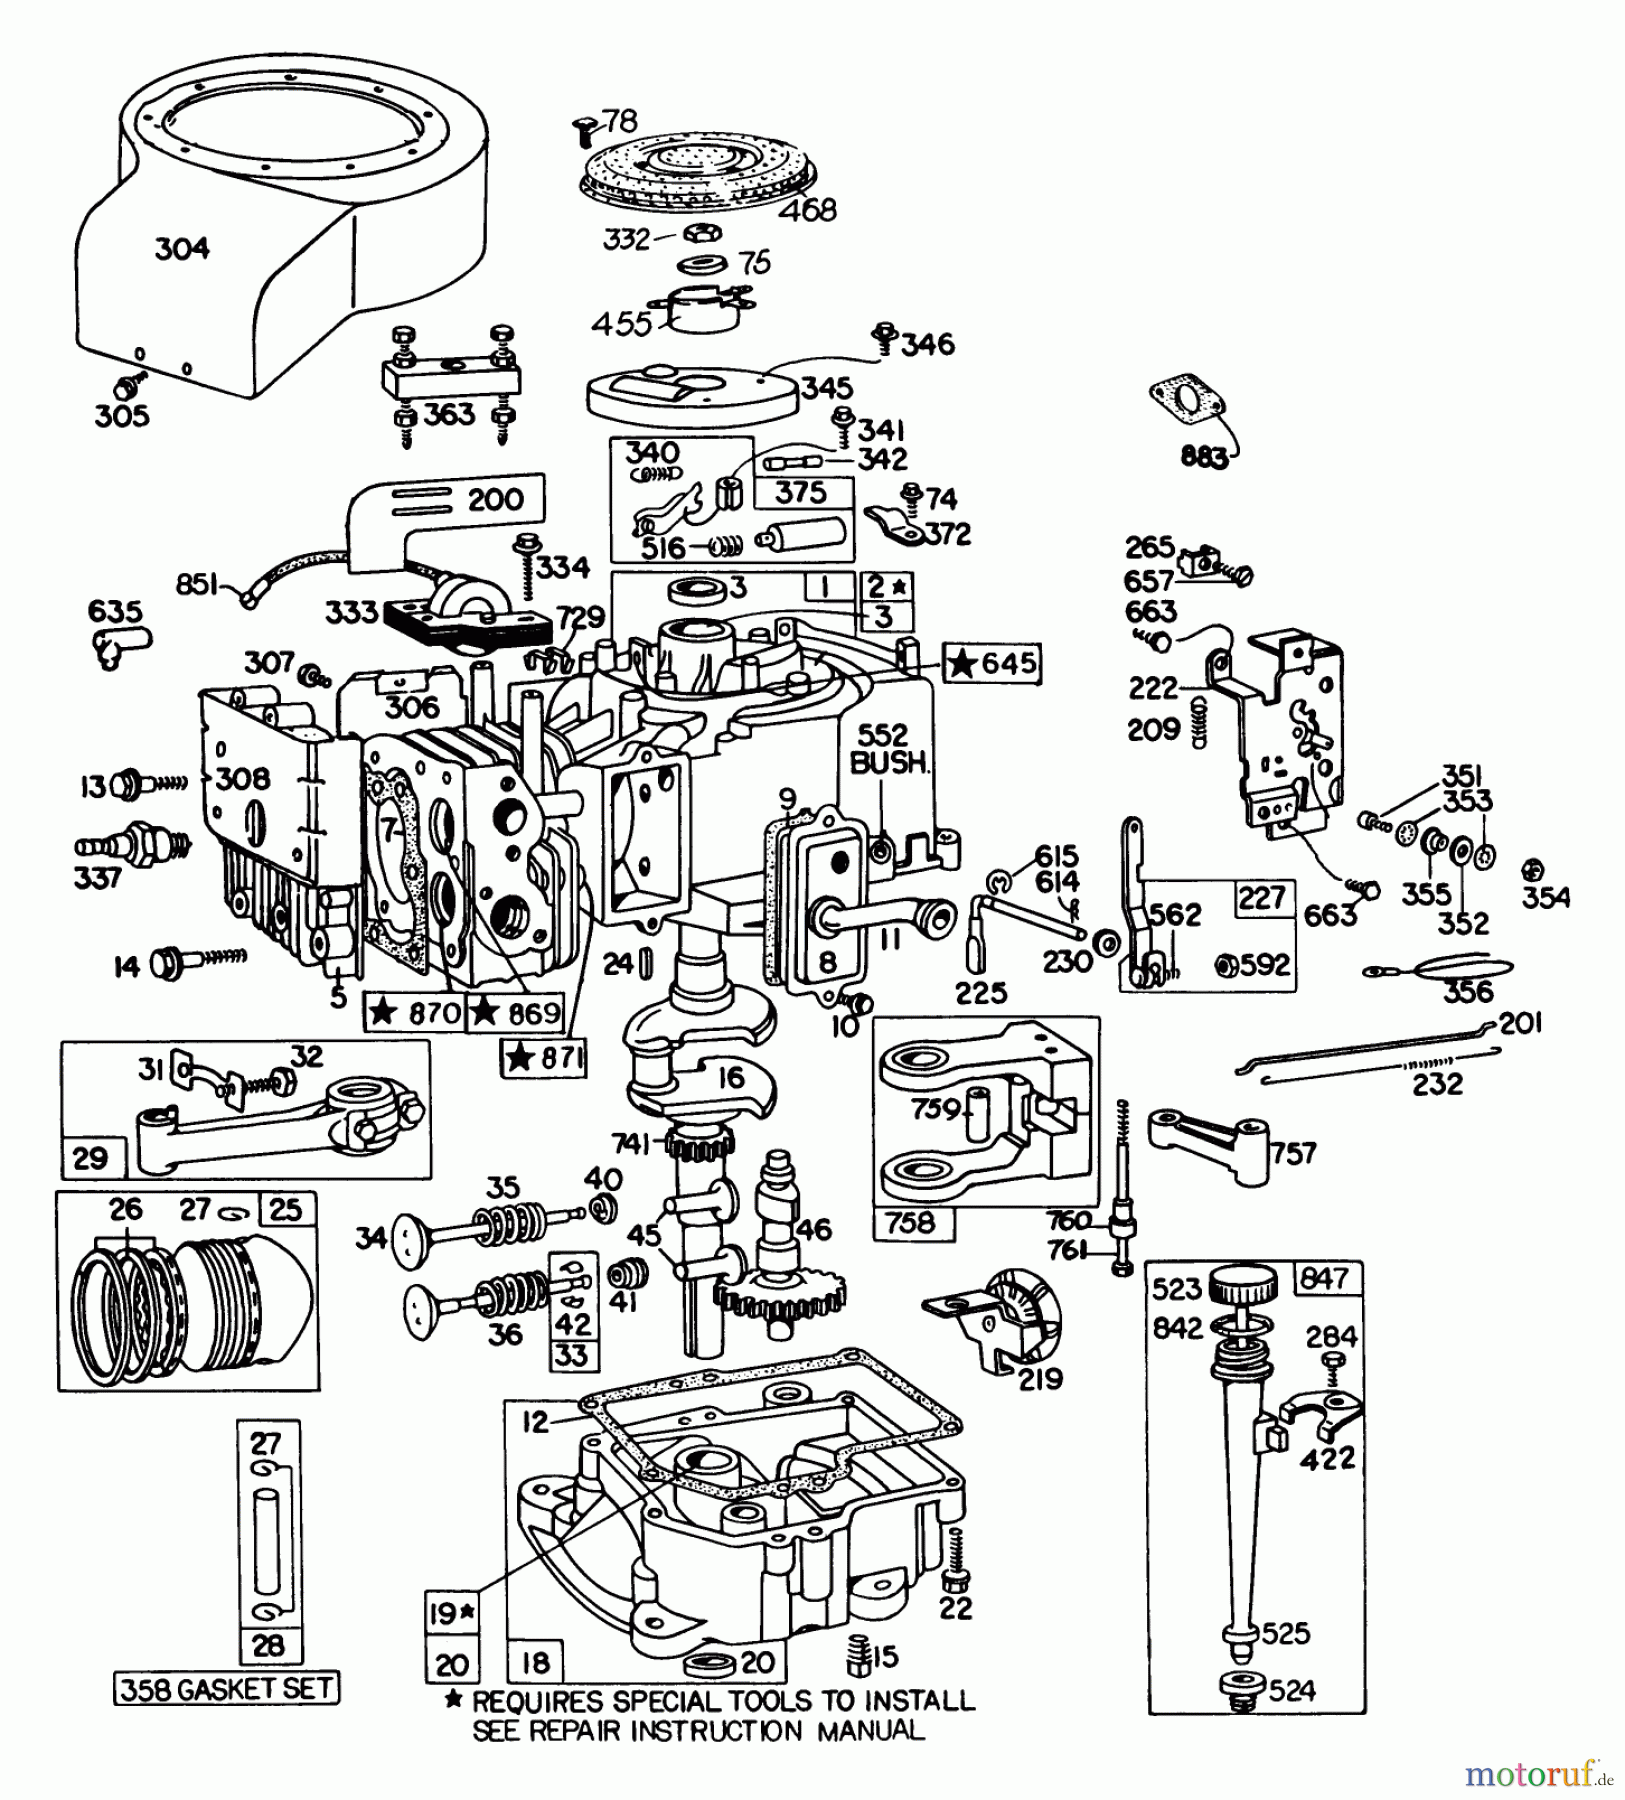  Toro Neu Mowers, Lawn & Garden Tractor Seite 1 57300 (8-32) - Toro 8-32 Front Engine Rider, 1981 (1000001-1999999) ENGINE BRIGGS & STRATTON MODEL 191707-5641-01 (MODEL 57300)